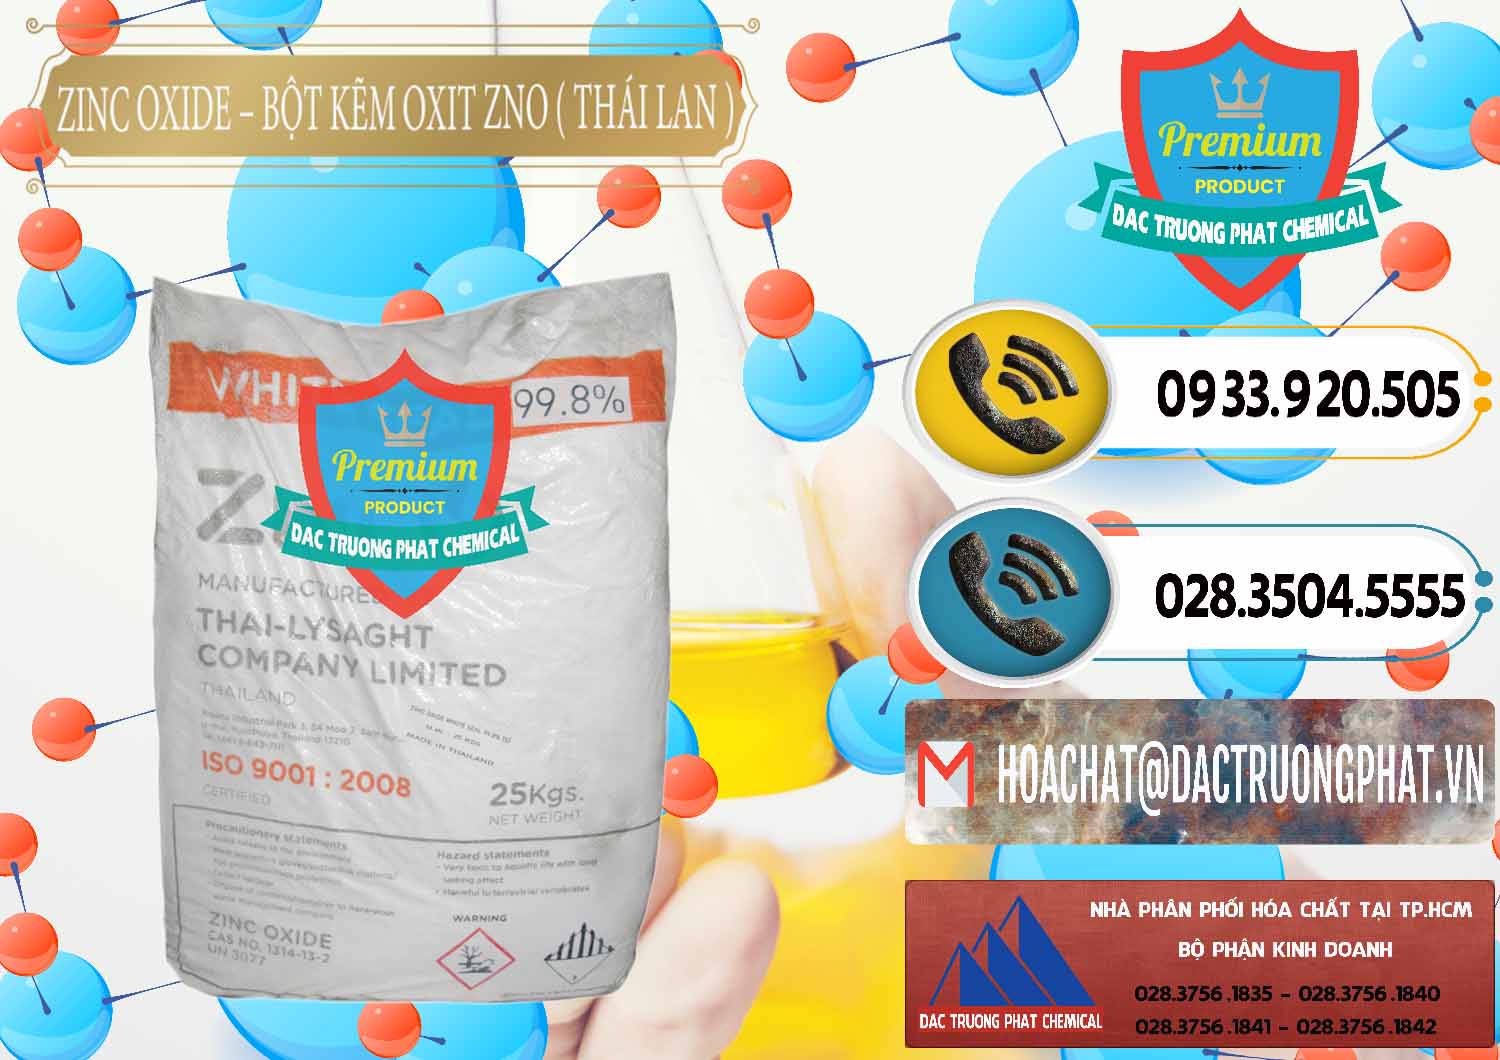 Công ty nhập khẩu ( bán ) Zinc Oxide - Bột Kẽm Oxit ZNO Thái Lan Thailand - 0181 - Cty chuyên kinh doanh ( phân phối ) hóa chất tại TP.HCM - hoachatdetnhuom.vn